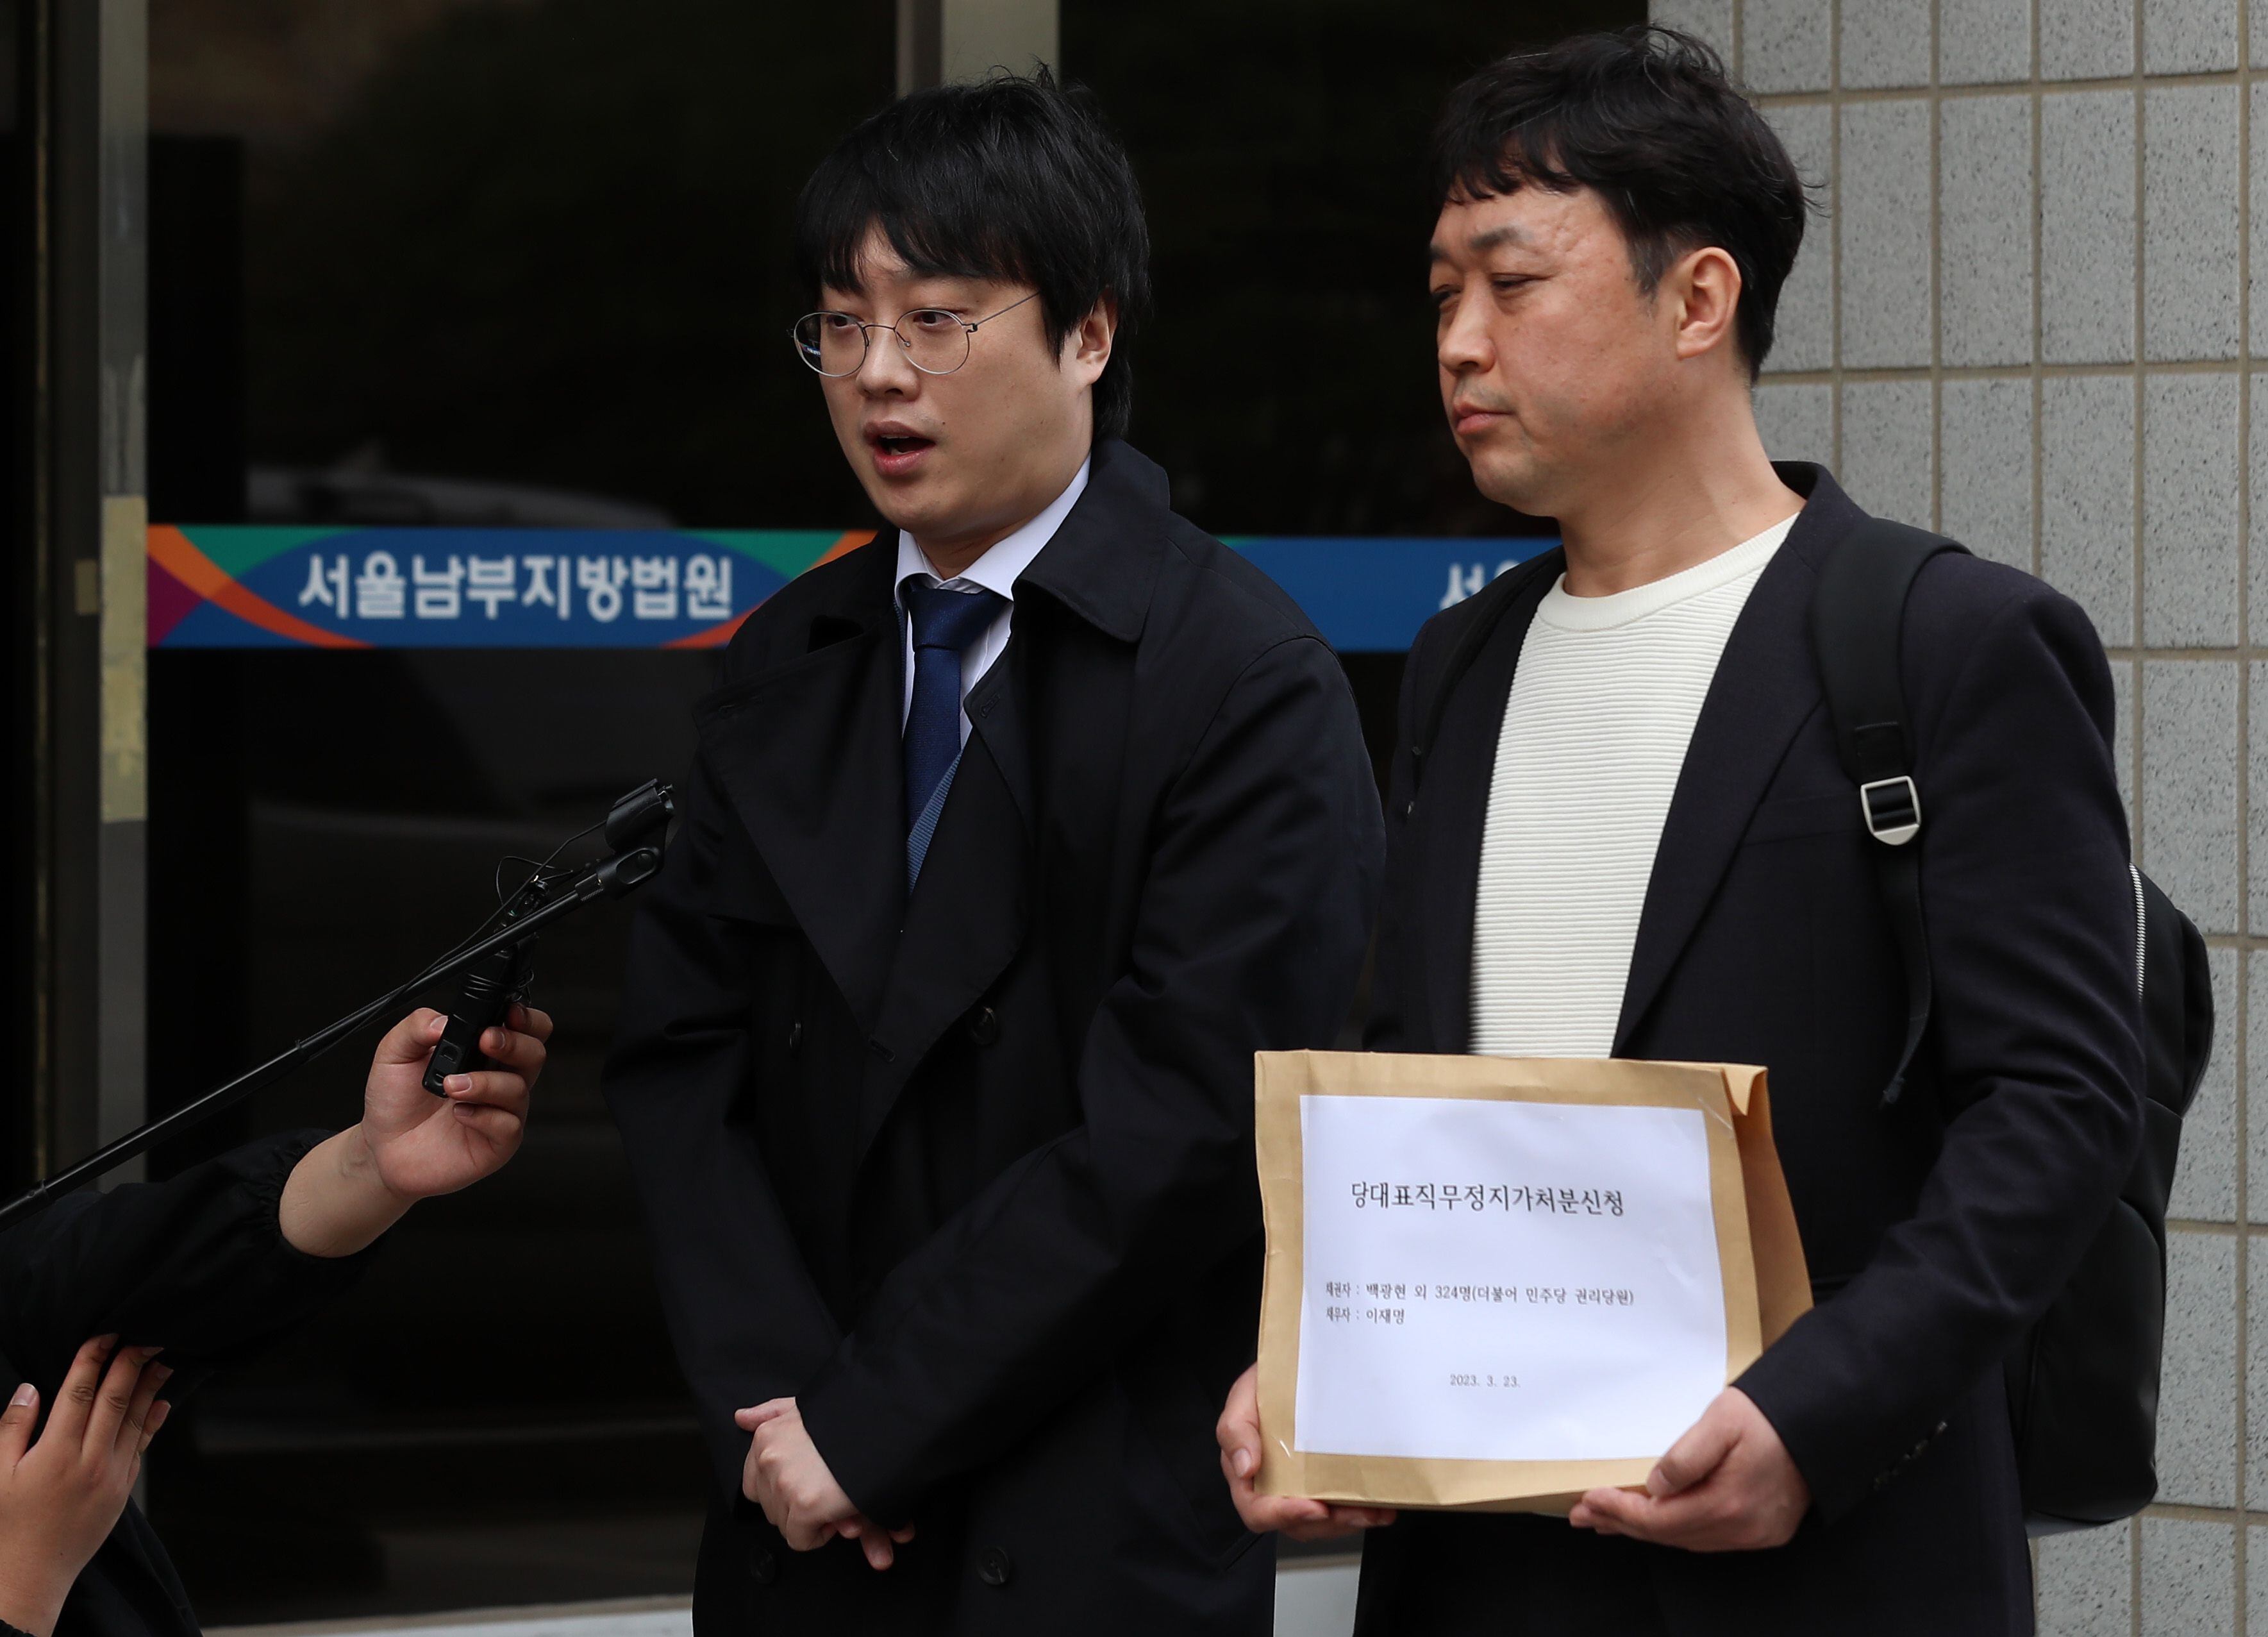 민주당 권리당원이면서 유튜버로 활동하는 백광현씨가 지난 3월 23일 서울 남부지방법원에서 이재명 더불어민주당 대표에 대한 직무정지 가처분 신청서 접수에 앞서 기자회견을 하고 있다./뉴시스